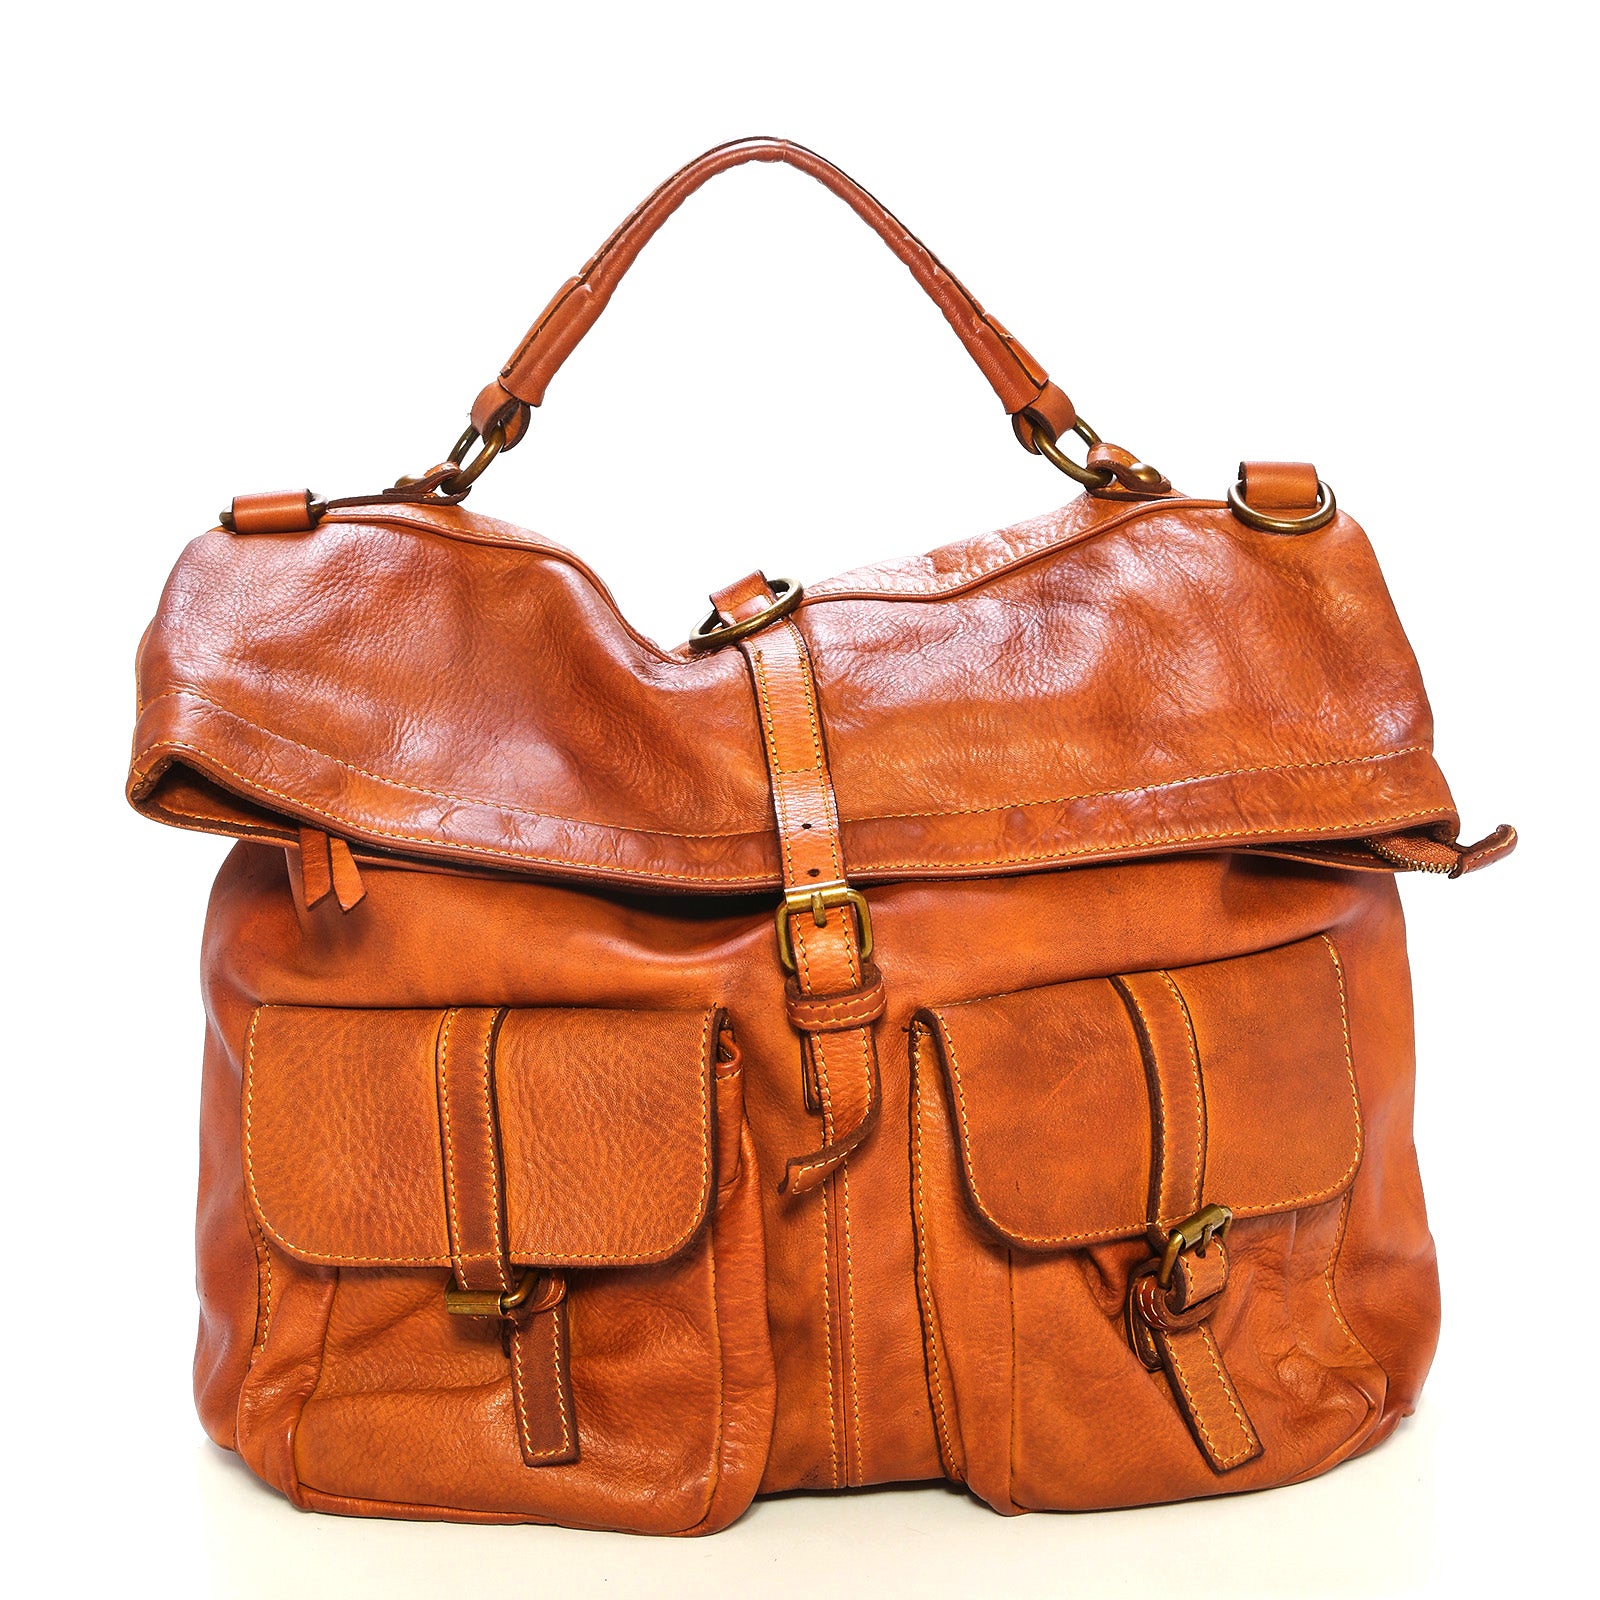 Beige/brown DKNY bag - Vinted